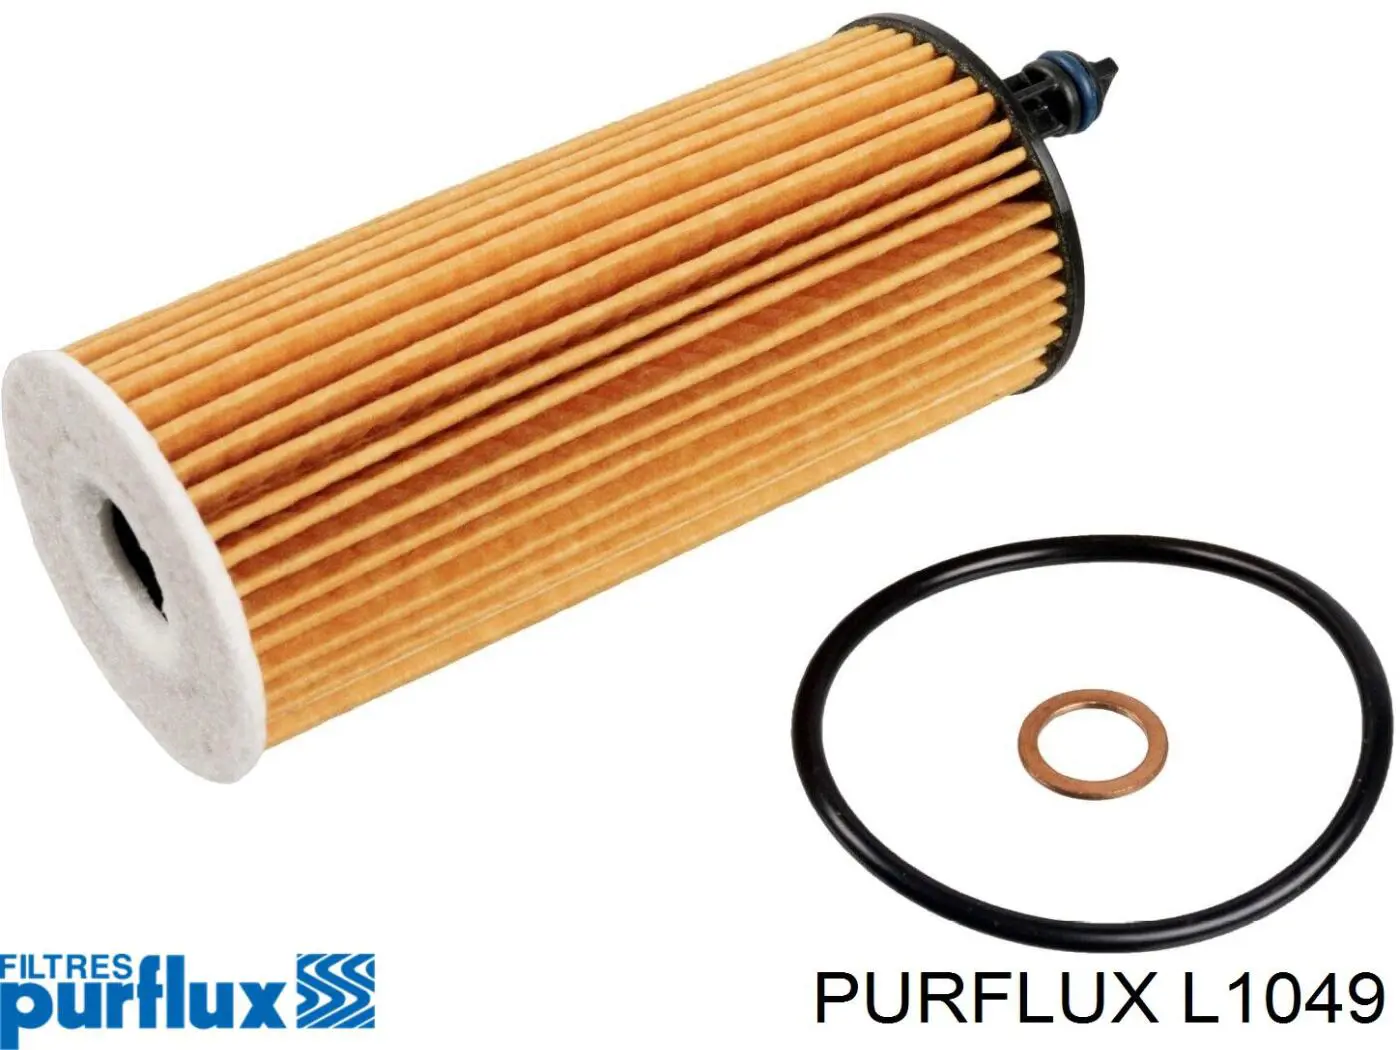 L1049 Purflux filtro de aceite